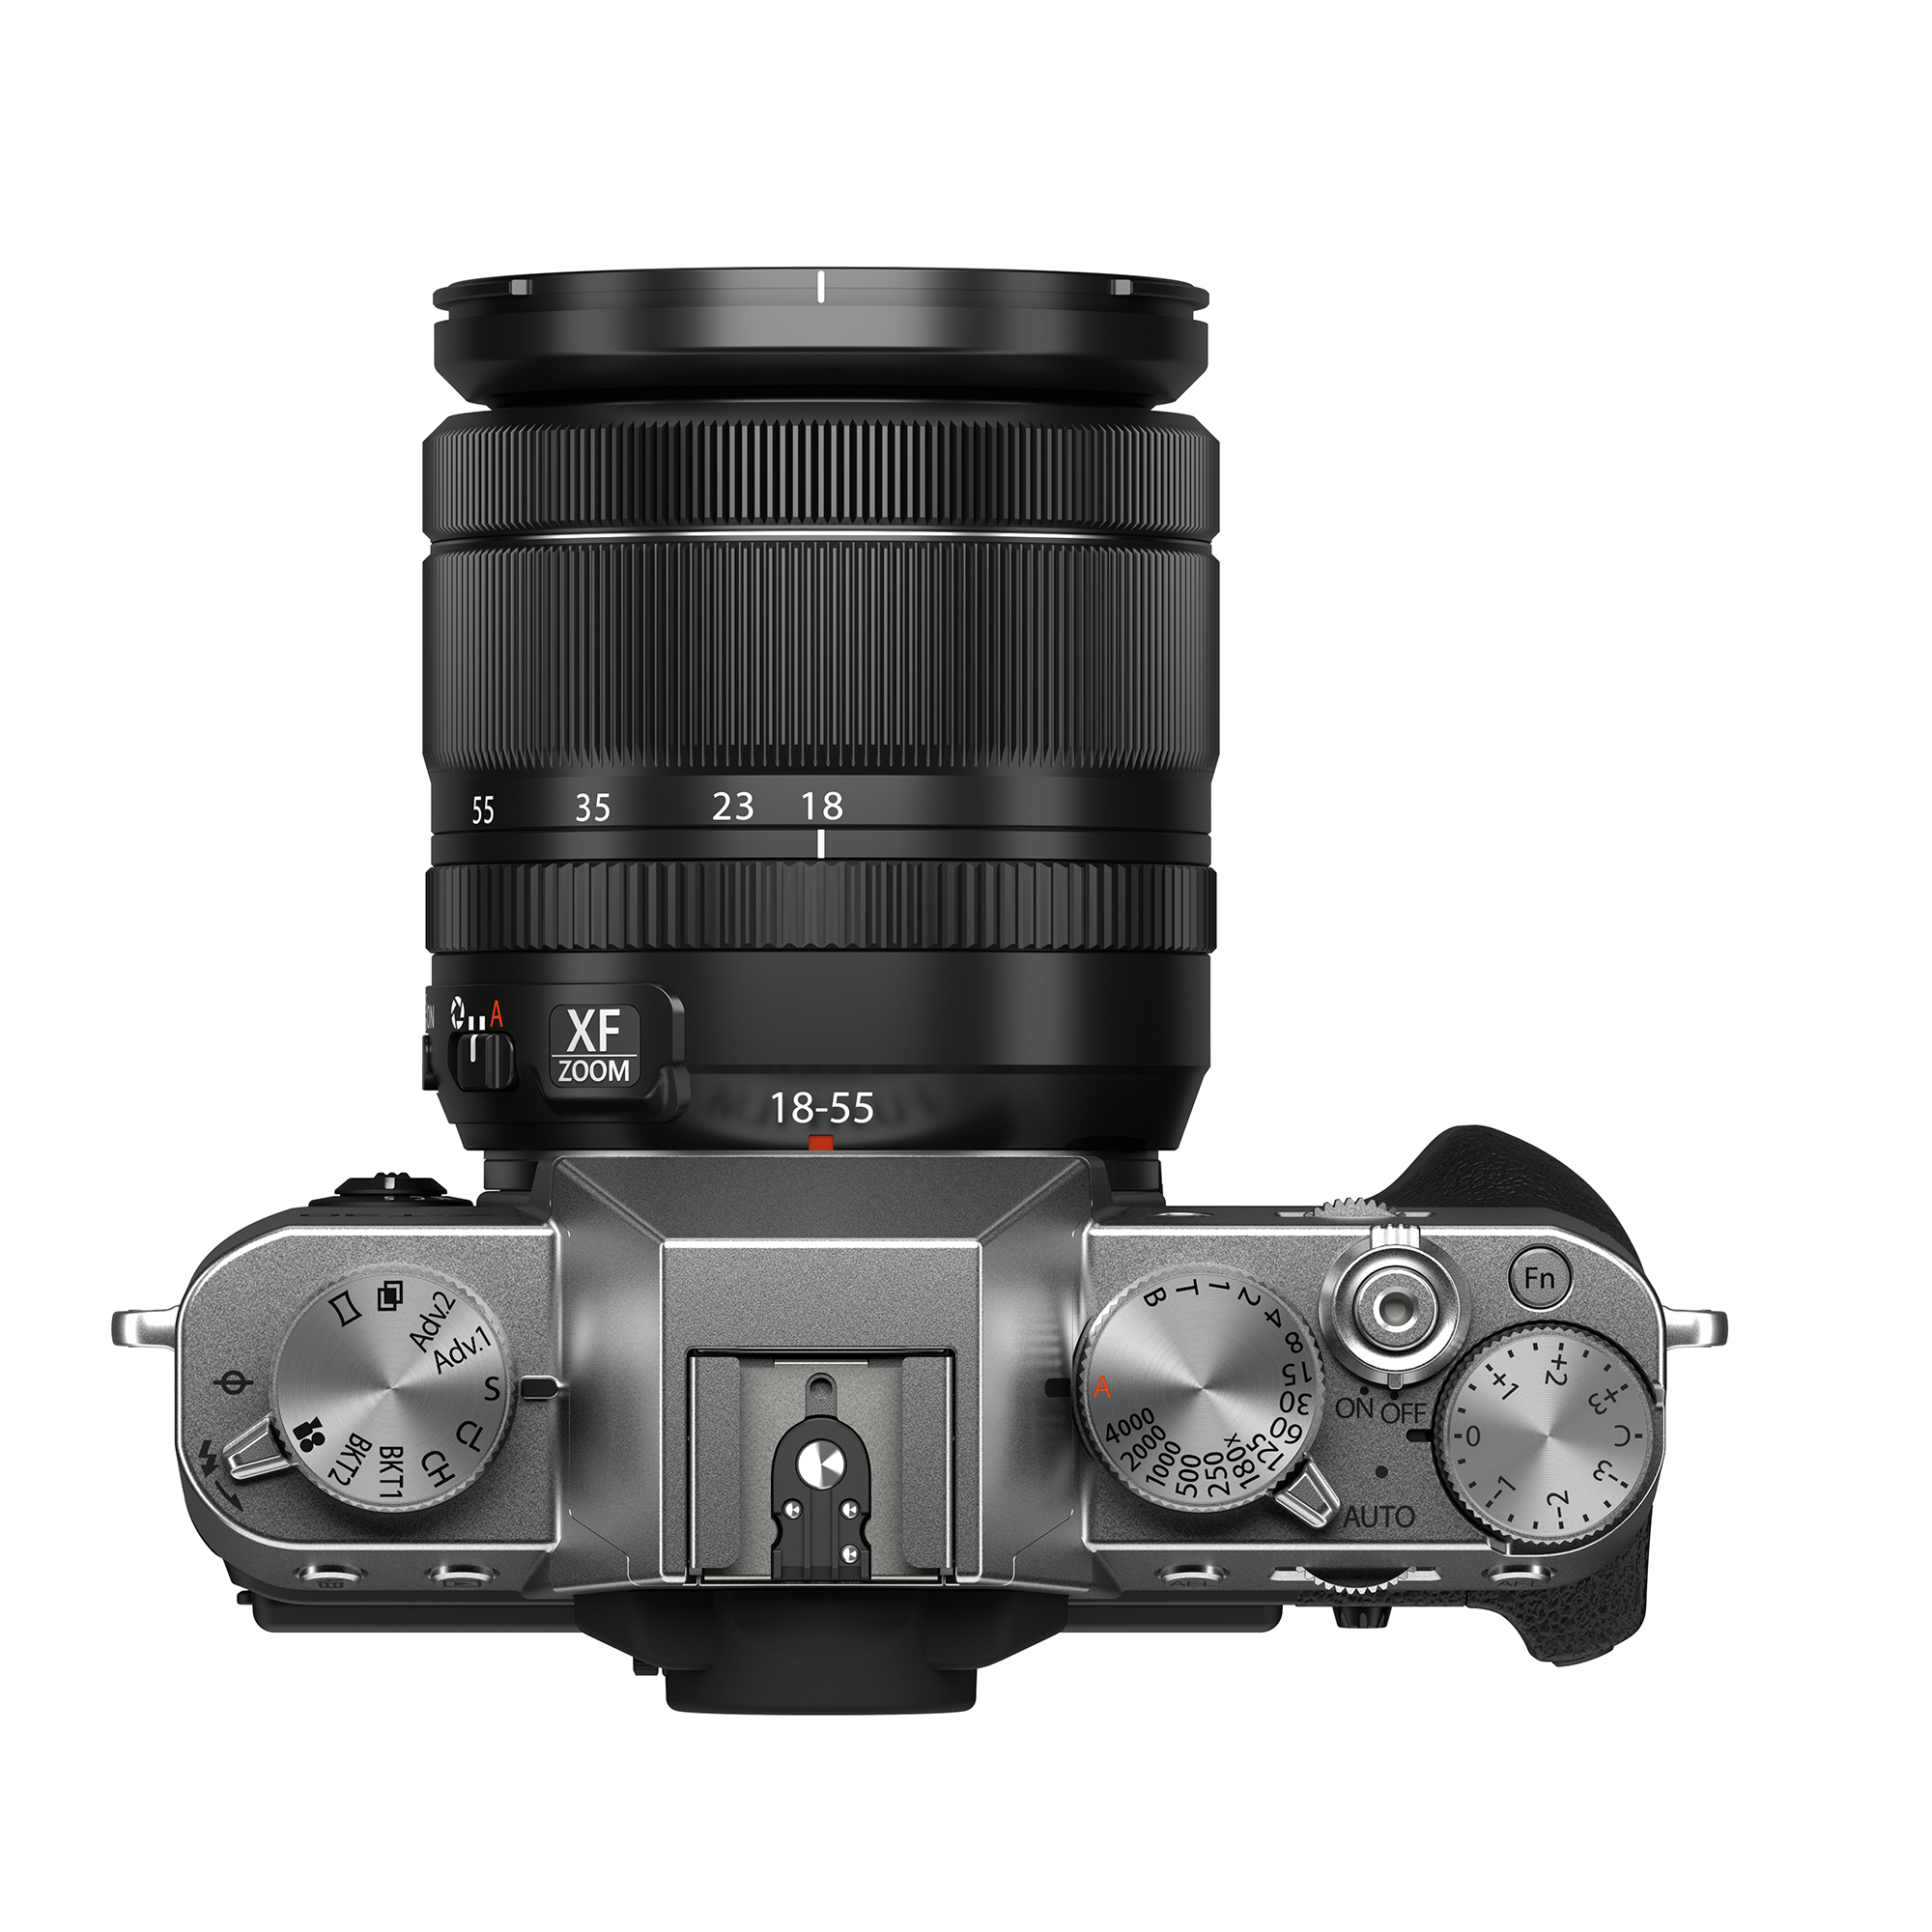 Caméra sans miroir Fujifilm X-T30 II Boîtier, avec le kit d'objectif XF18-55 mm,